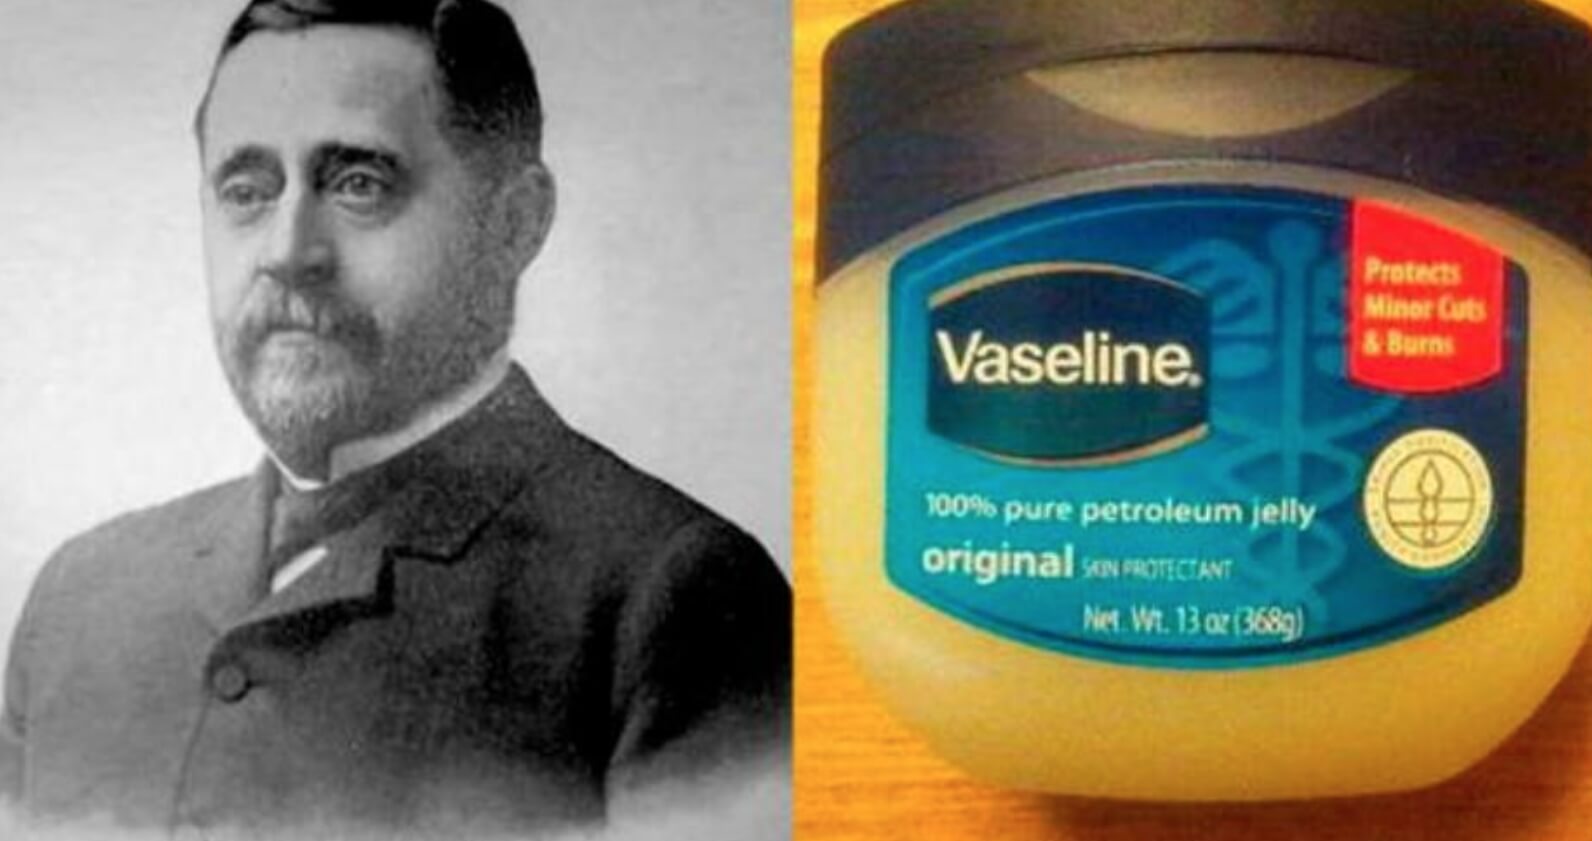 Нужно ли есть вазелин чтобы дожить до 100 лет? Создатель вазелина считал свое изобретение целебным, и пытался излечить им все болезни. Источник: Reddit. Фото.